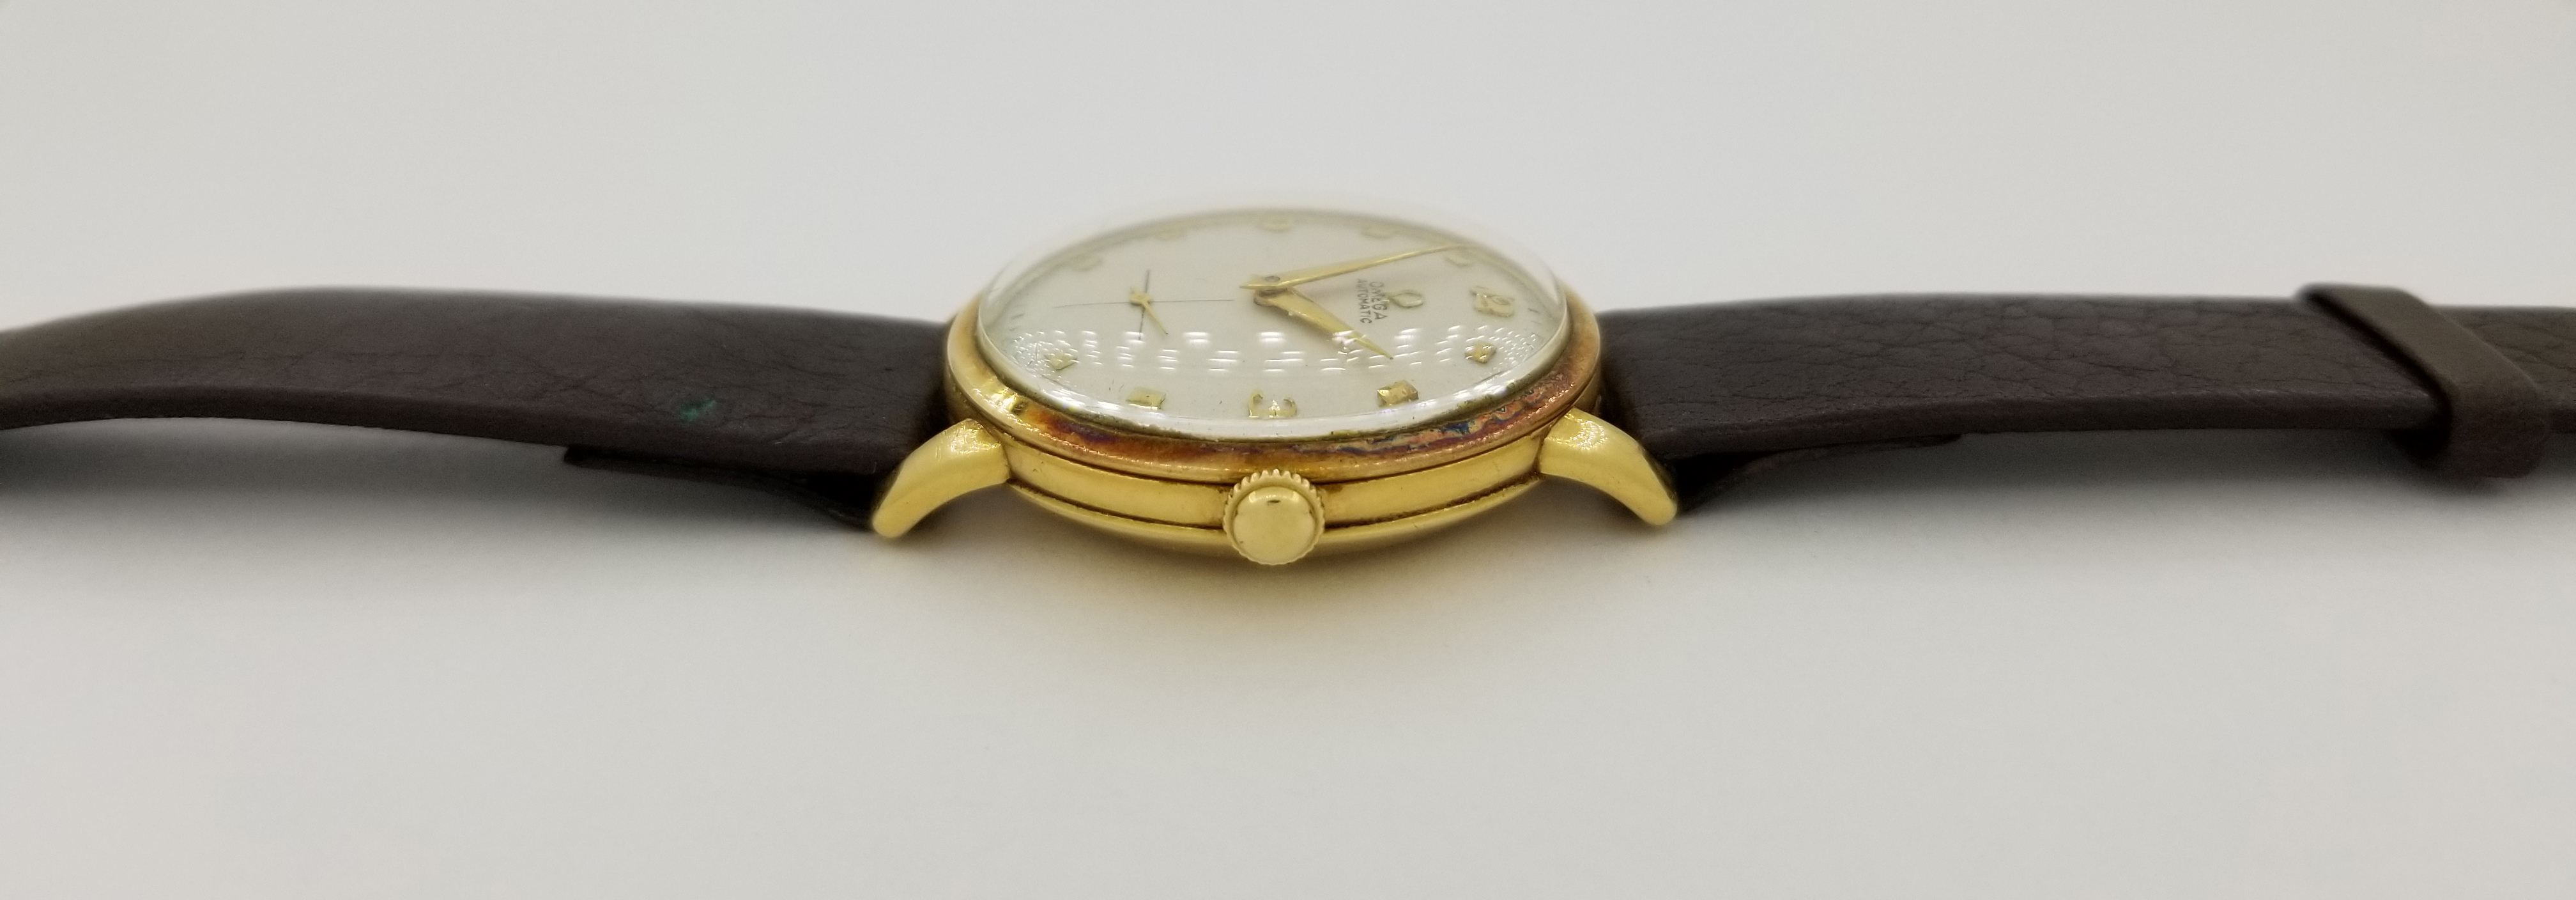 Vintage 14K Gold Omega Watch - Image 5 of 8